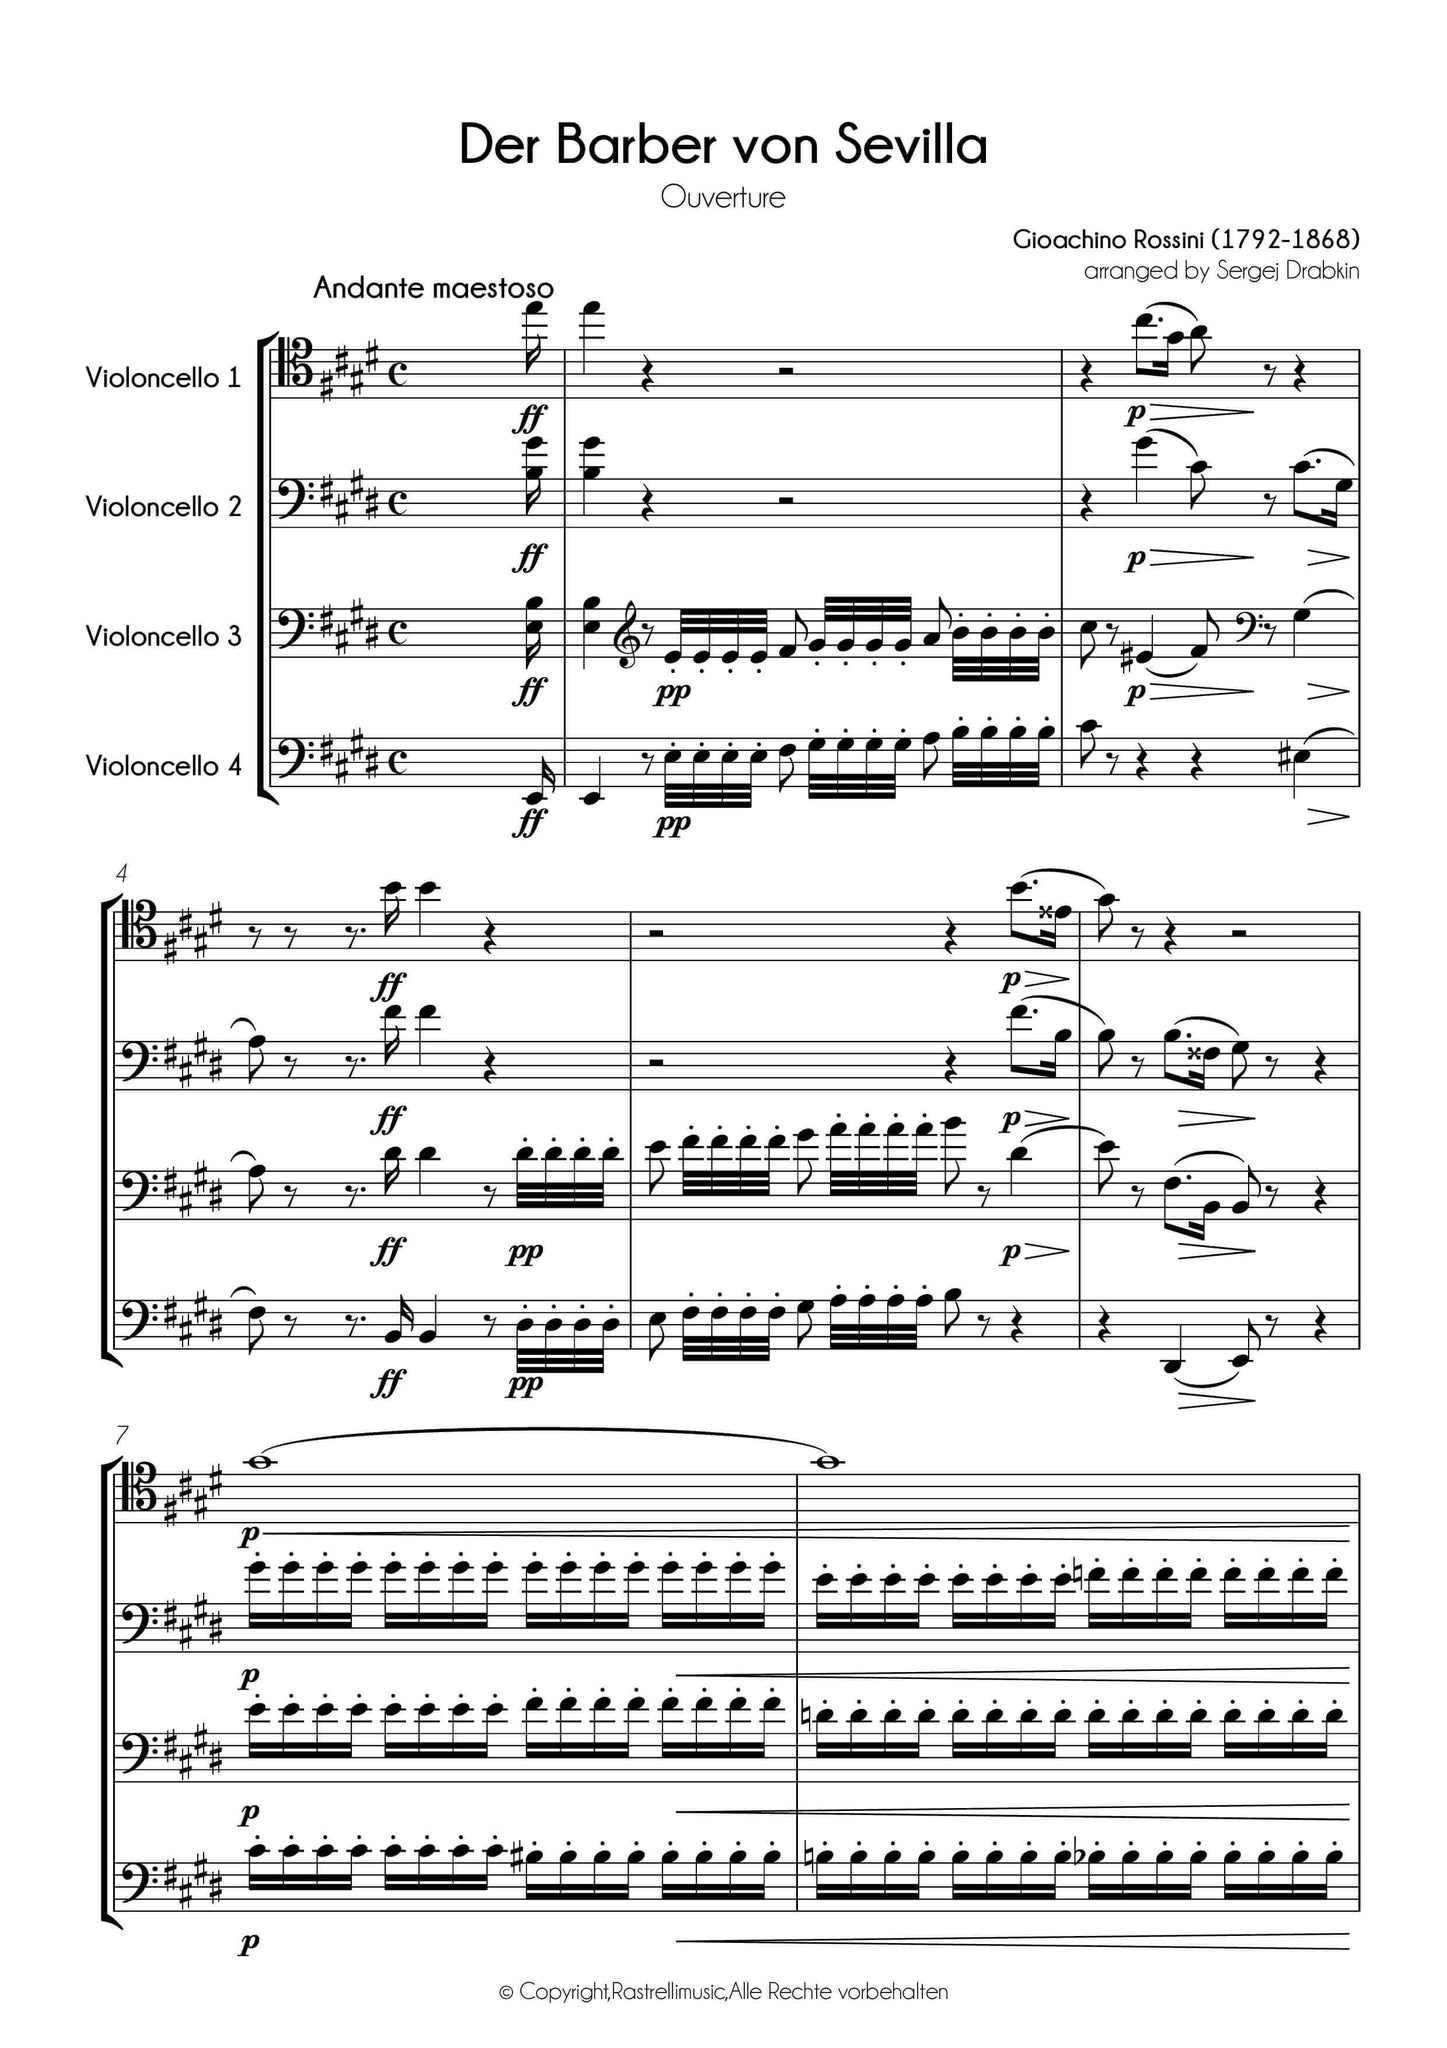 Musiknoten für Cello Quartett aus dem Stück Der Barbier von Sevilla Ouvertüre von Rossini, Gioachino